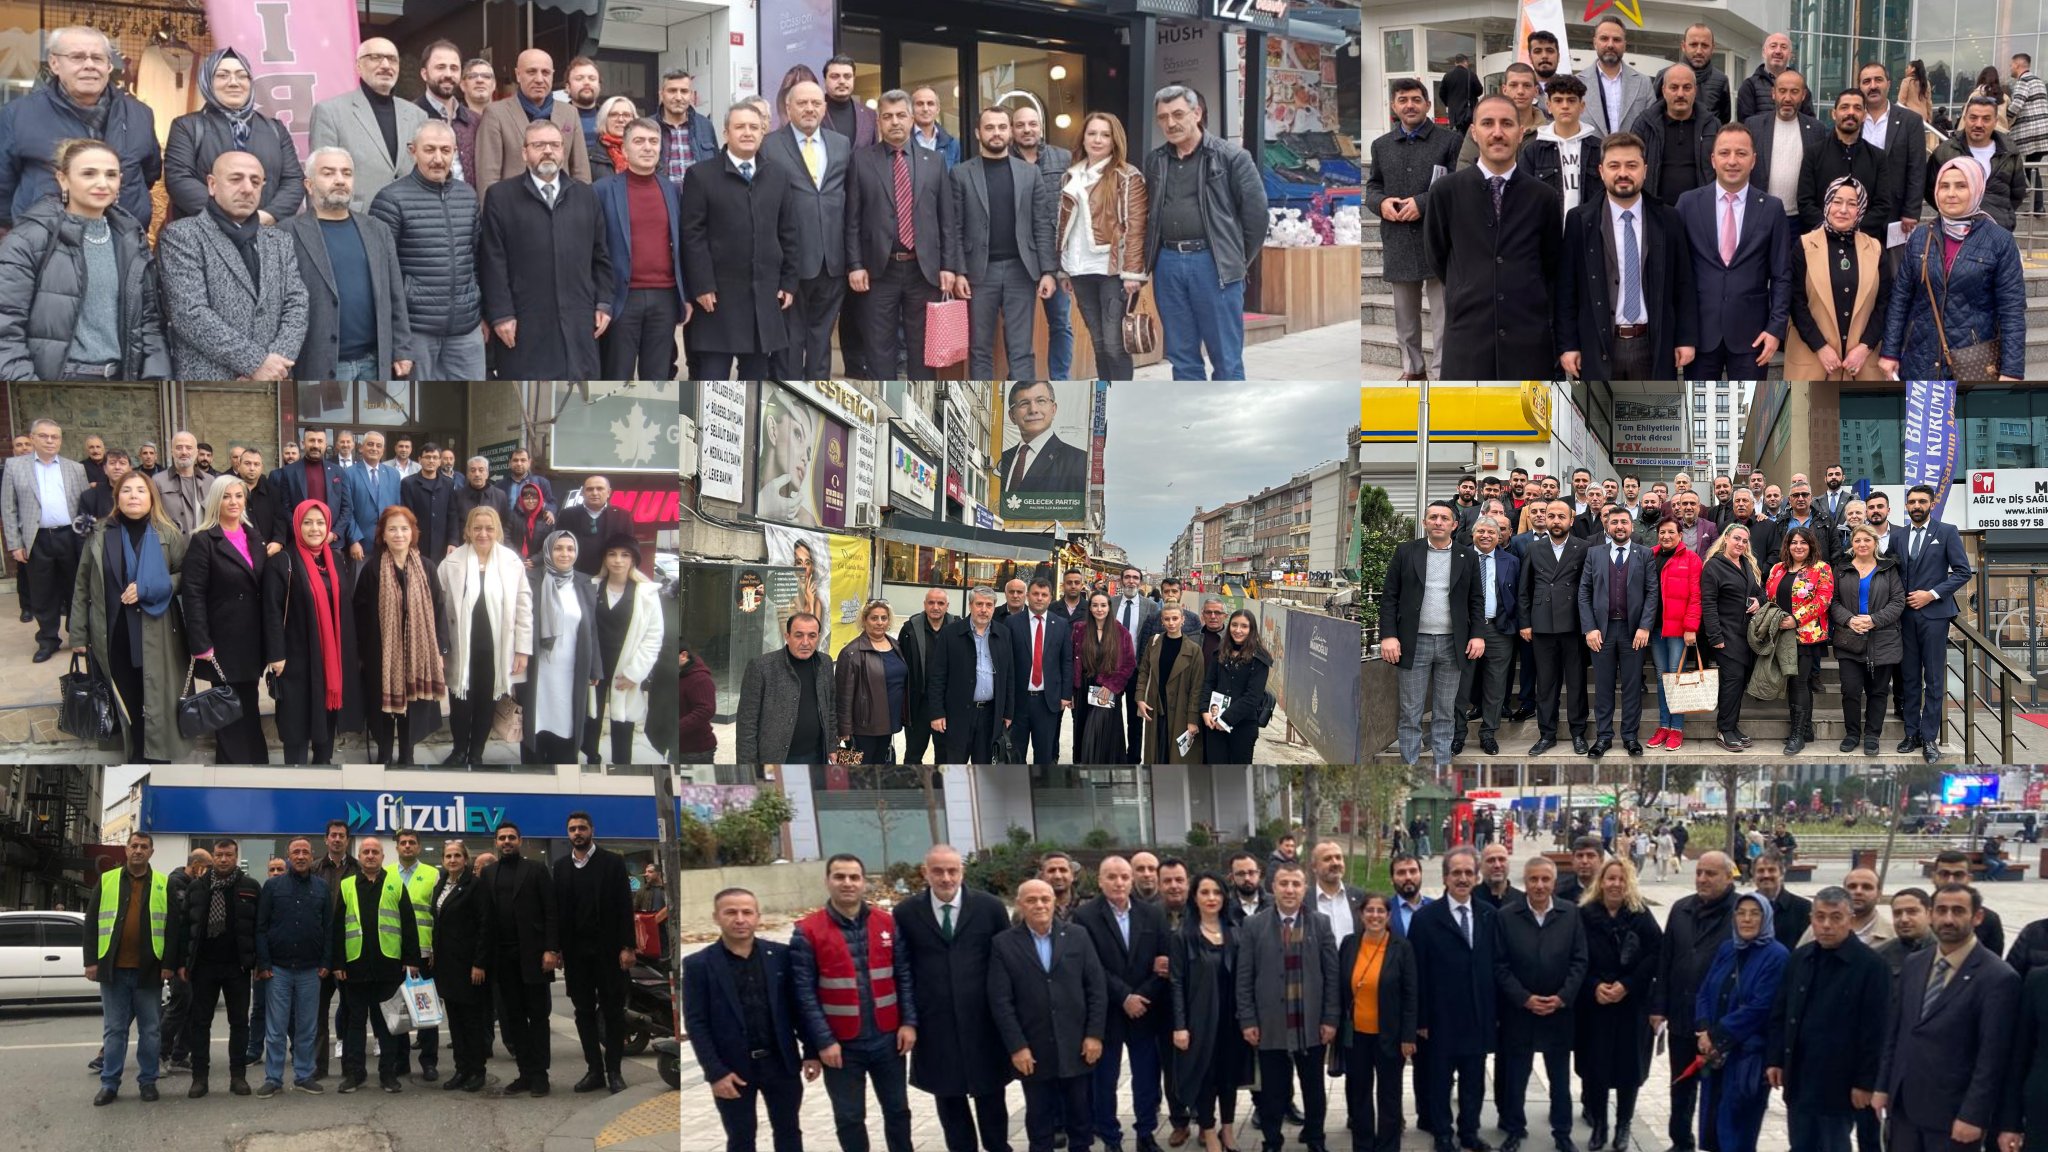 Gelecek Partisi İstanbul teşkilatları; Genel Merkez, il ve ilçe yöneticilerinin katılımıyla 7️⃣ farklı noktada saha çalışmaları ve esnaf ziyaretleri gerçekleştiriyor.